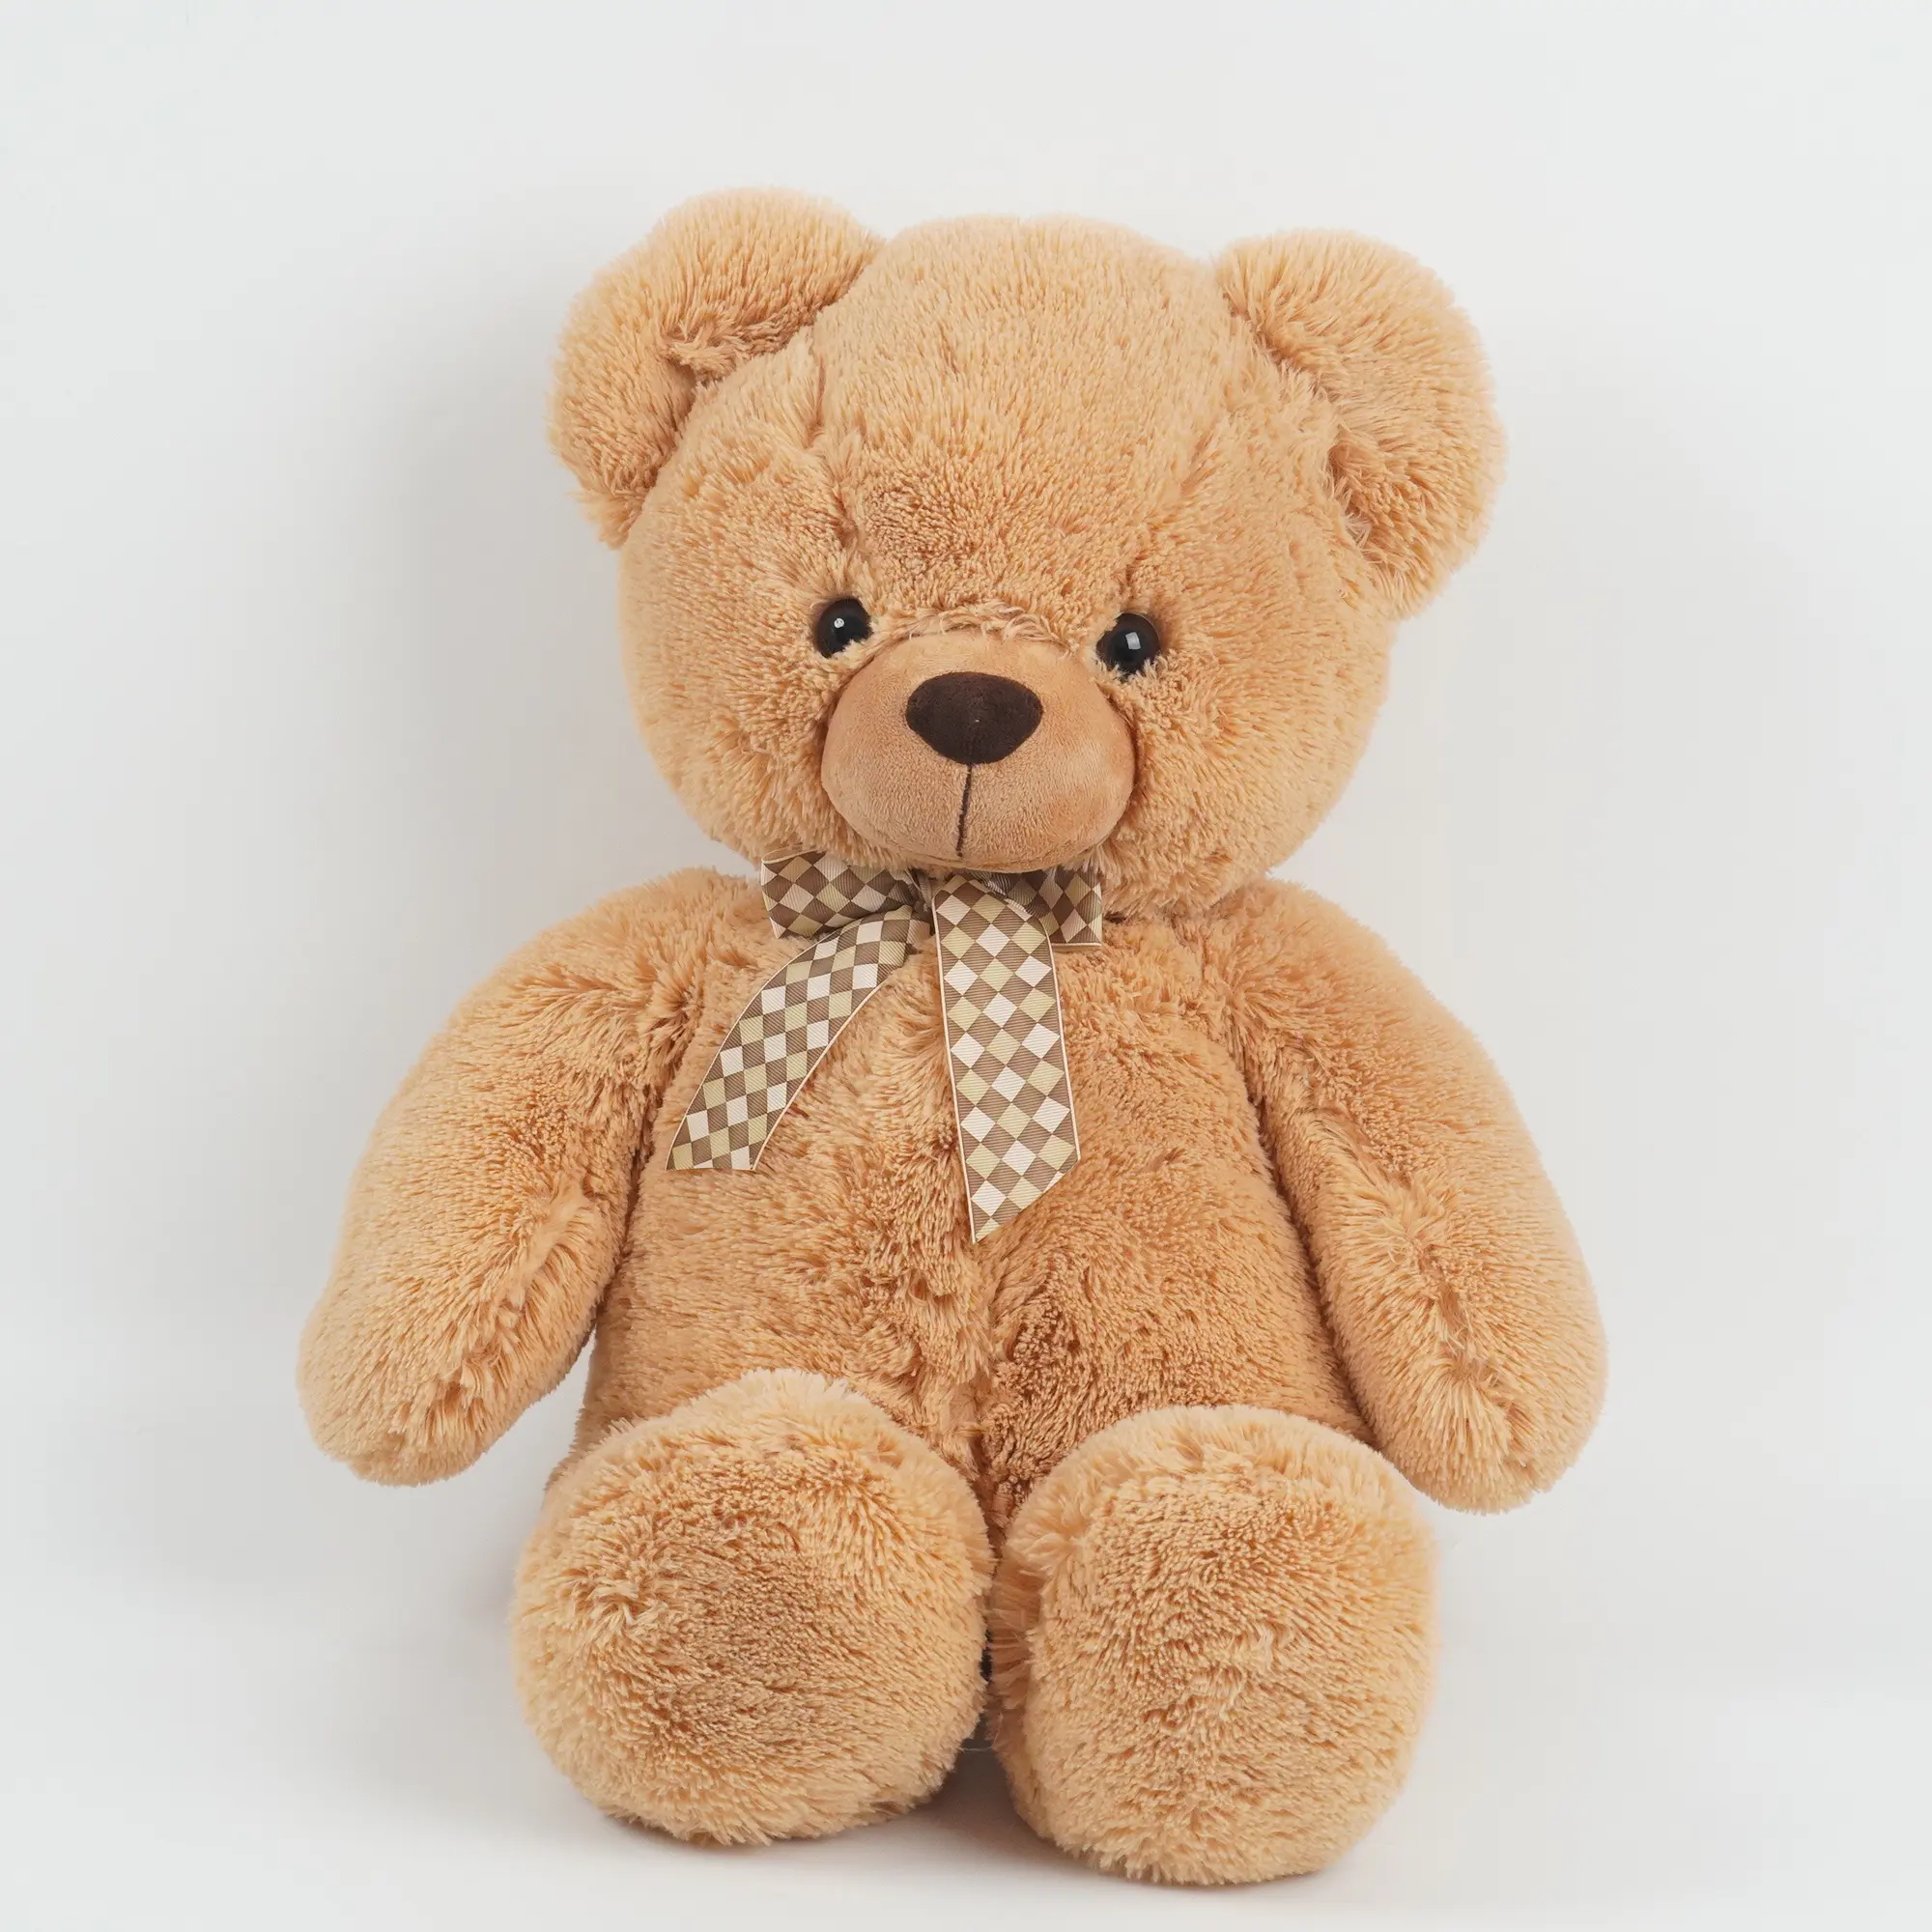 Hot Sale Großhandel Riese große süße Teddybär Haut weich ungefüllt 100cm Plüsch Bär Haut Spielzeug Geschenk für die Förderung